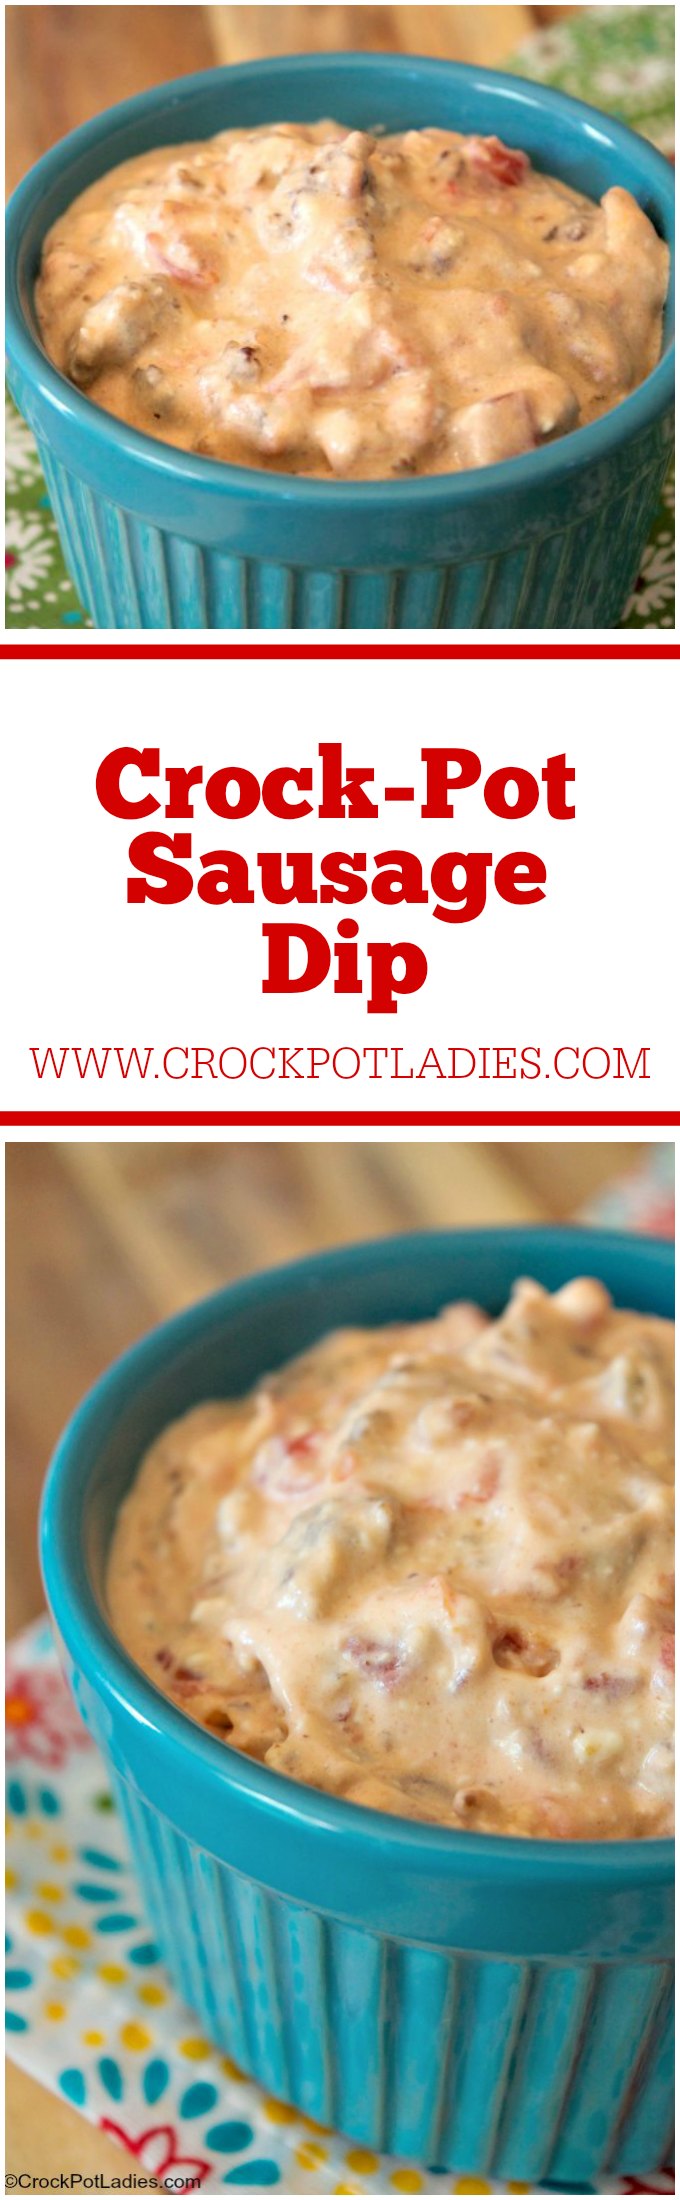 Crock-Pot Sausage Dip